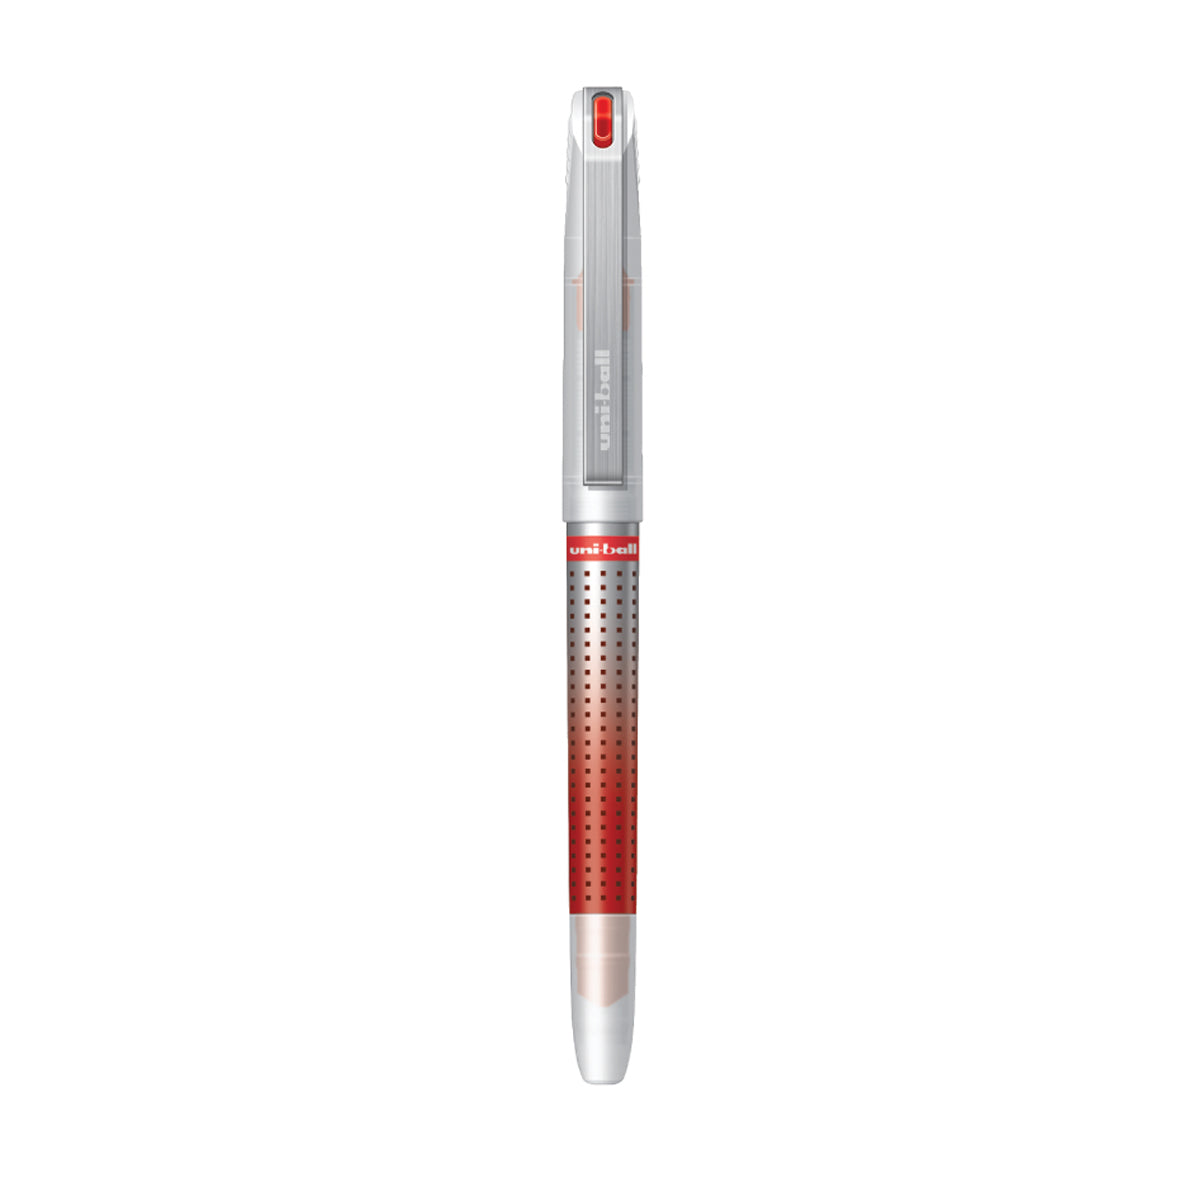 UniBall Eye Needle Roller Ball Pen UB187S